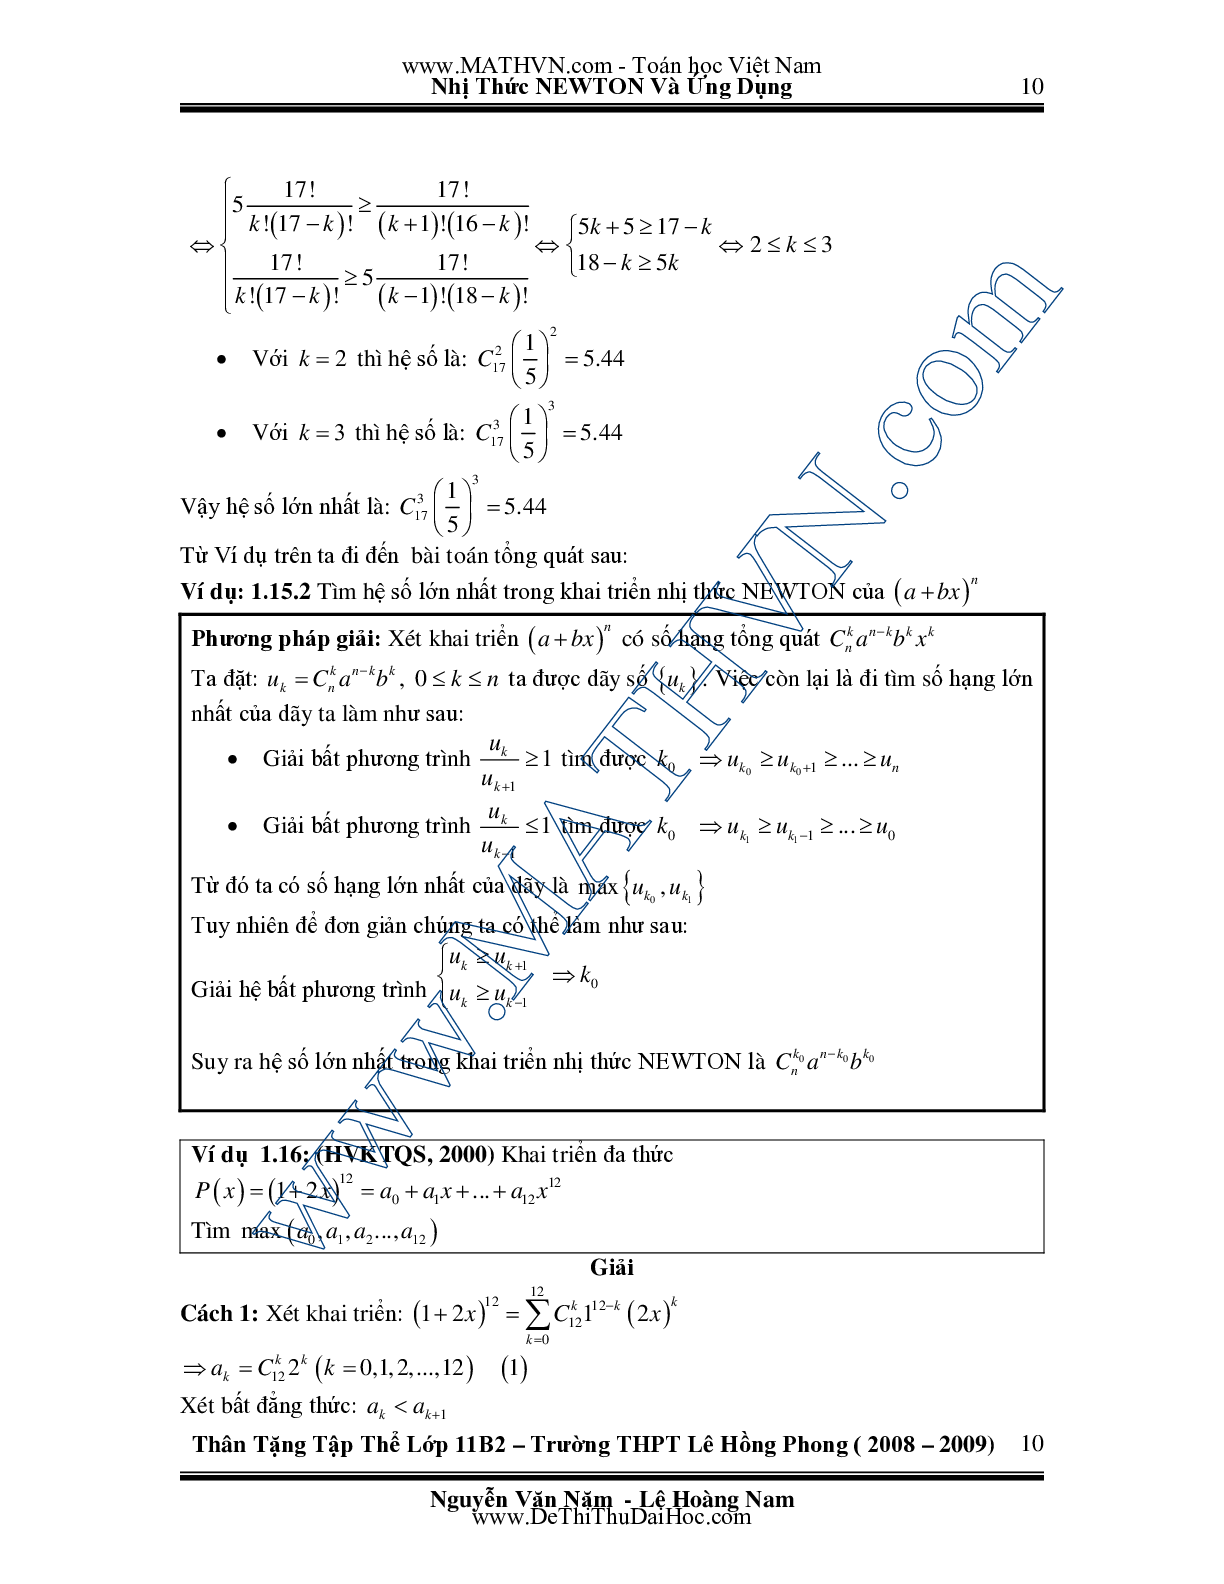 Chuyên đề Nhị thức Newton và ứng dụng môn Toán lớp 11 (trang 10)